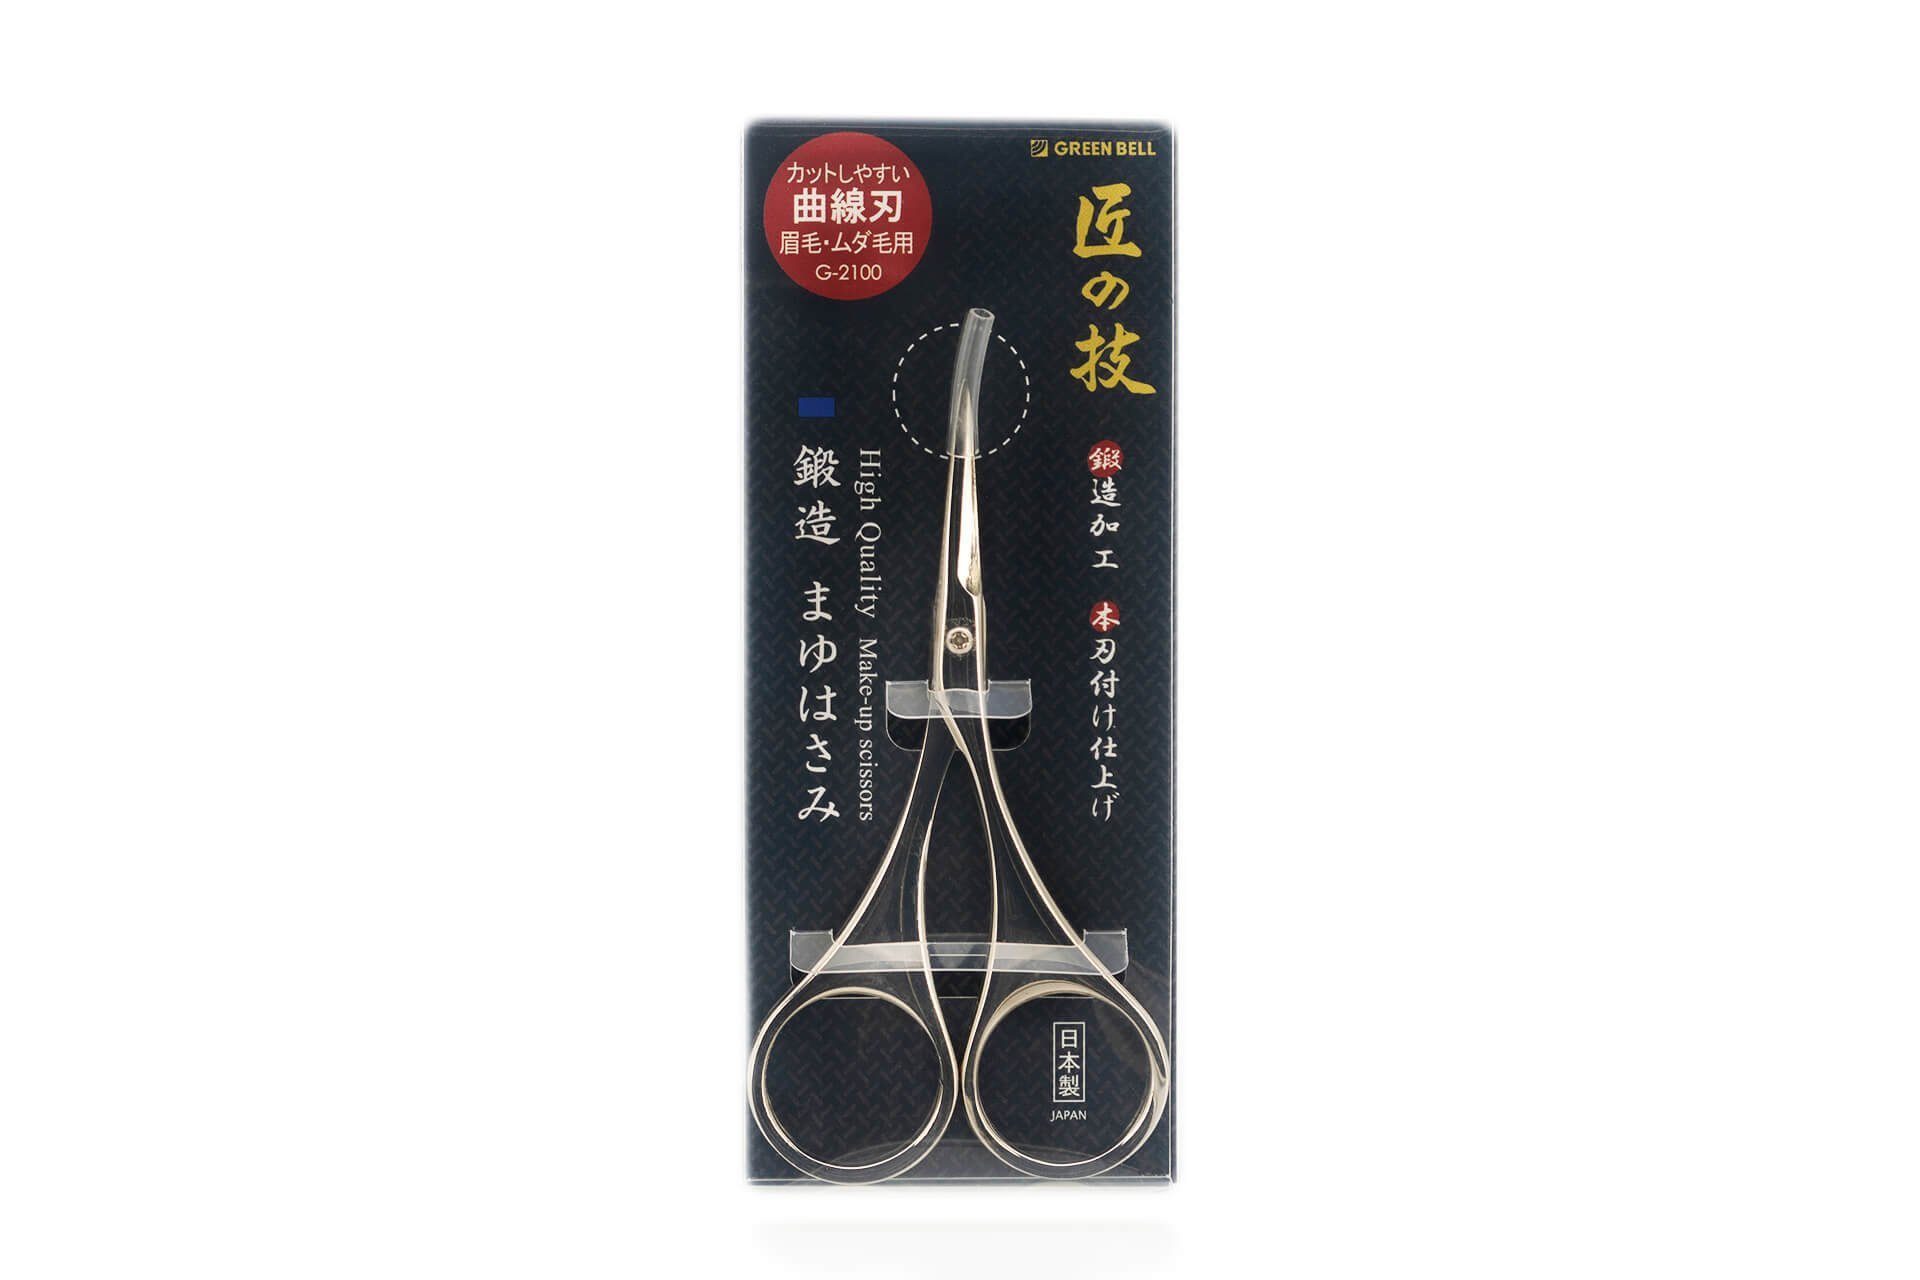 Seki EDGE 9.3x5x0.8 Qualitätsprodukt G-2100 handgeschärftes Augenbrauenschere geschmiedet Japan aus cm, Augenbrauenschere